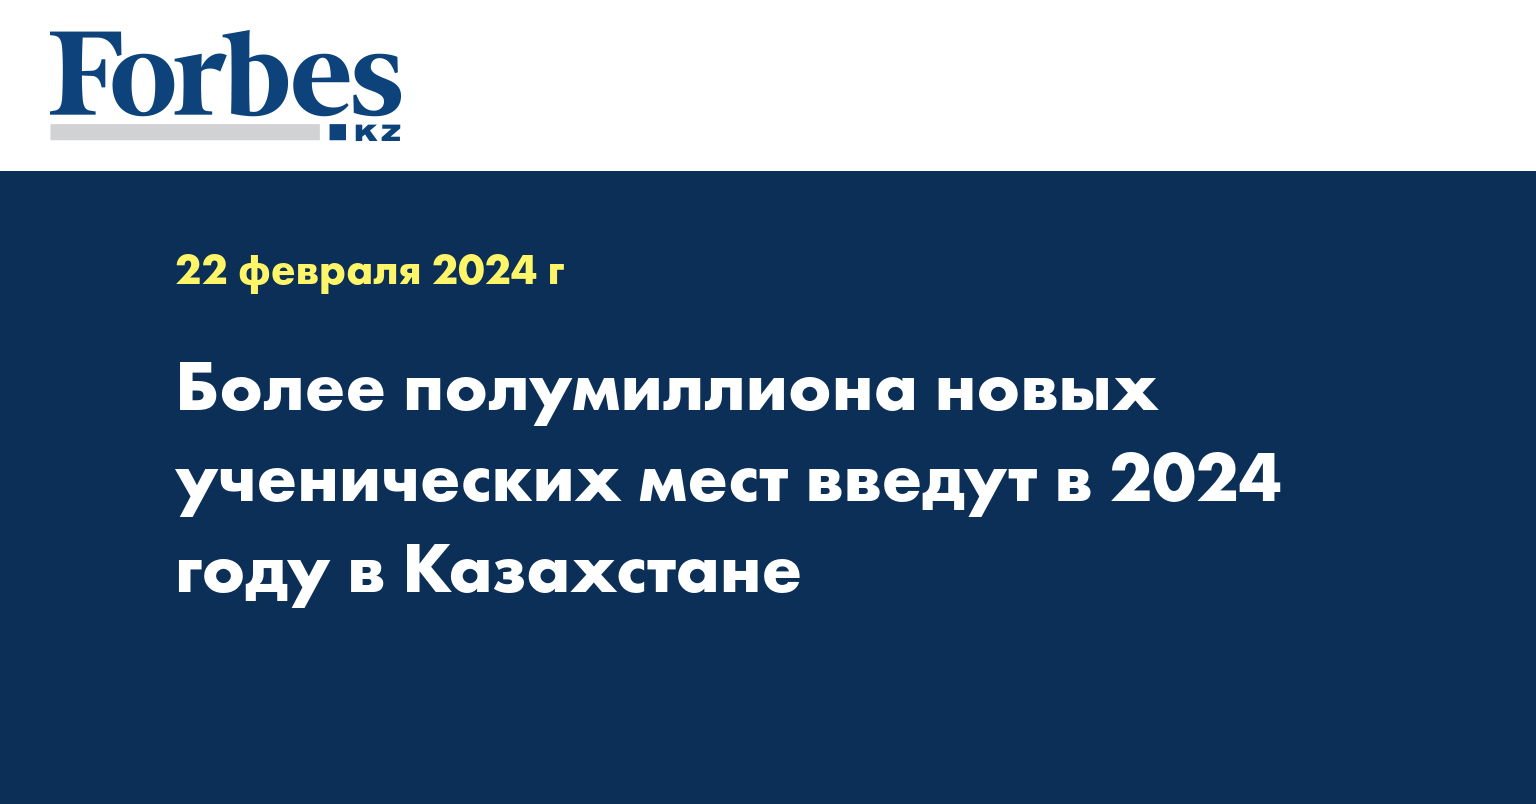 Более полумиллиона новых ученических мест введут в 2024 году в Казахстане